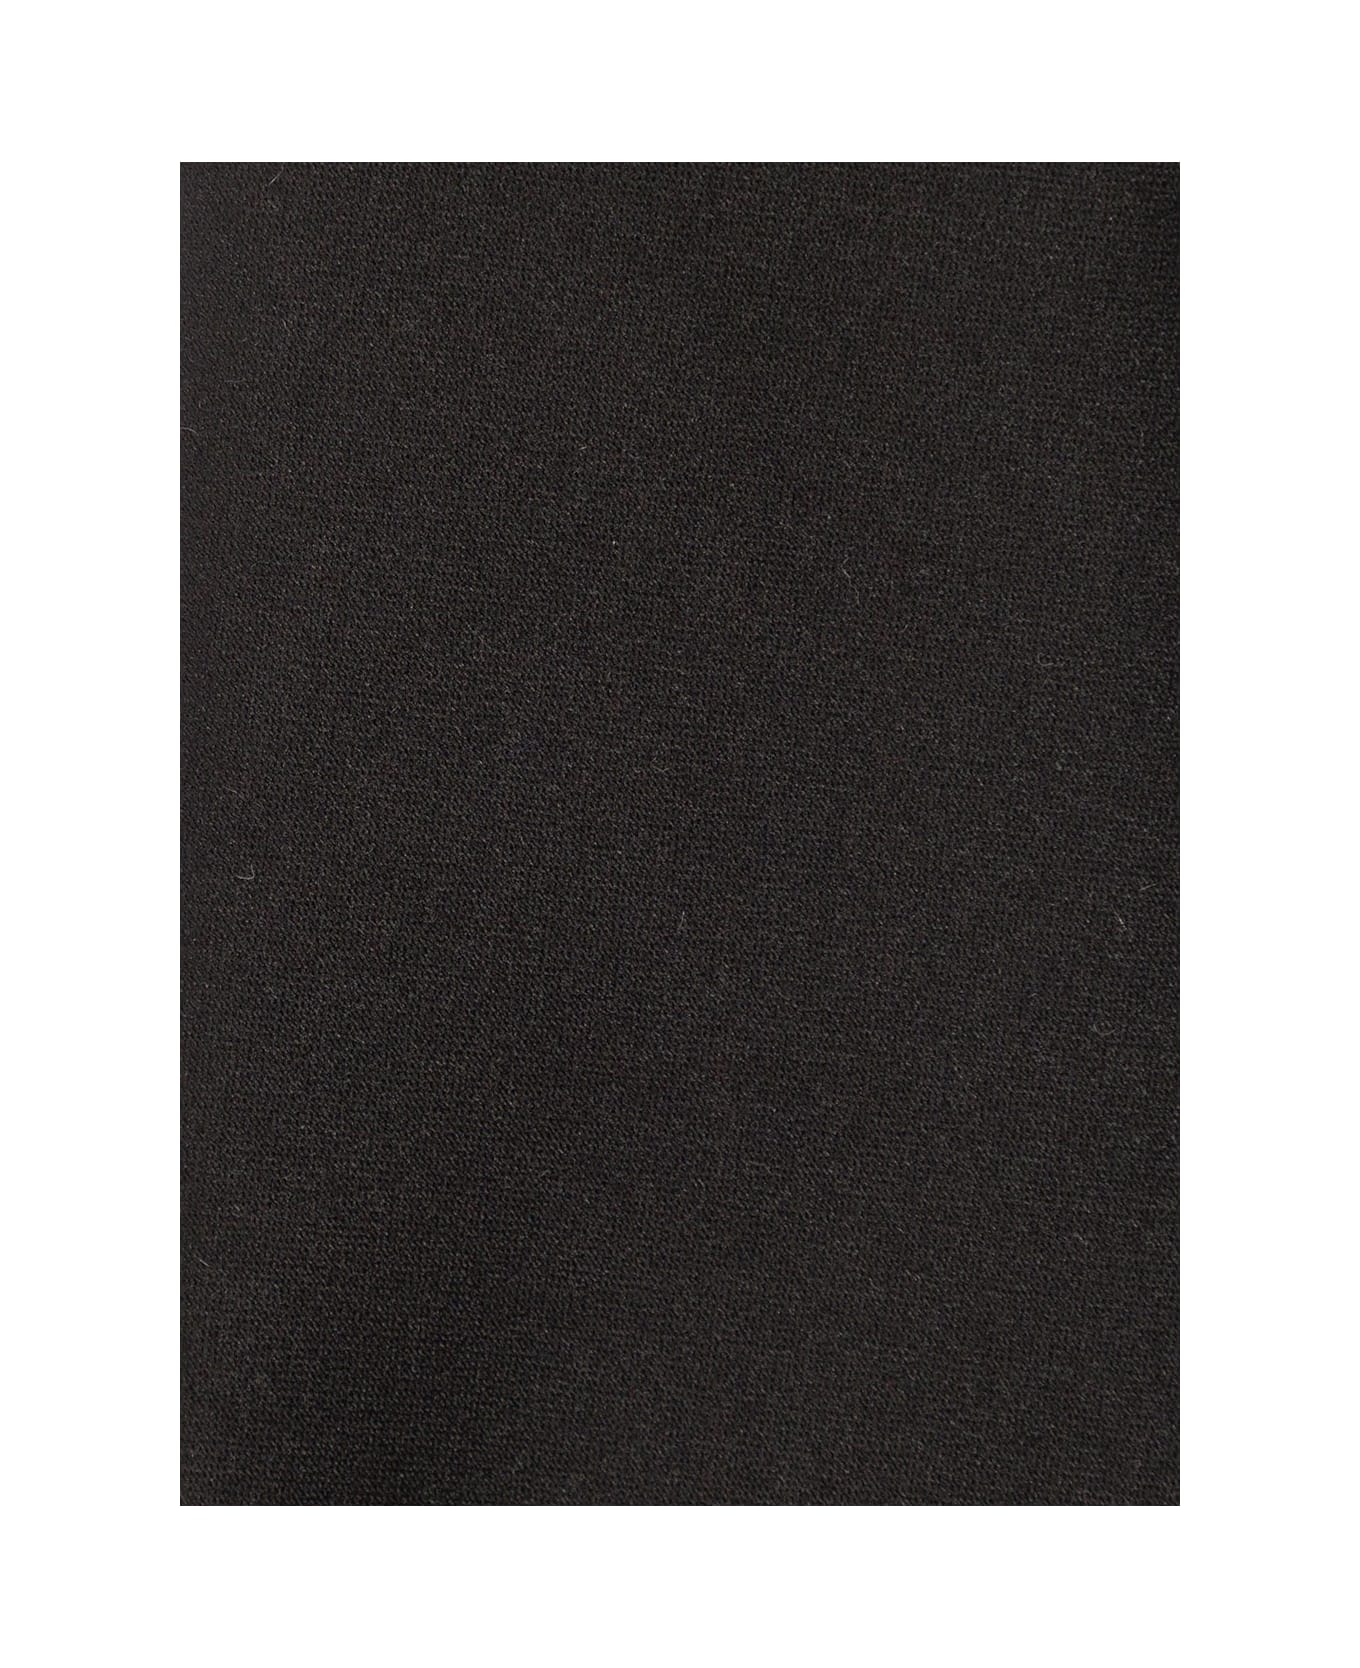 Tagliatore Black Classic-style Tie In Polyester Man - Black